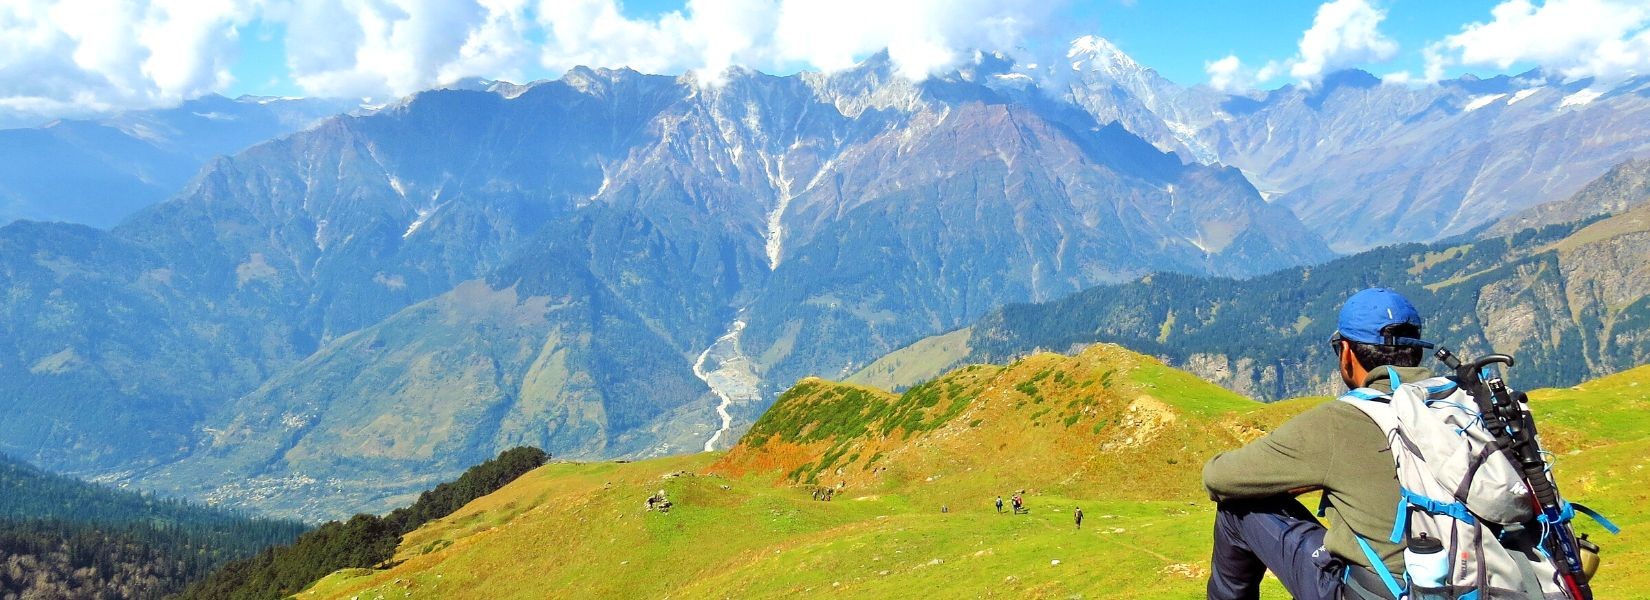 Solo Trekking in Nepal